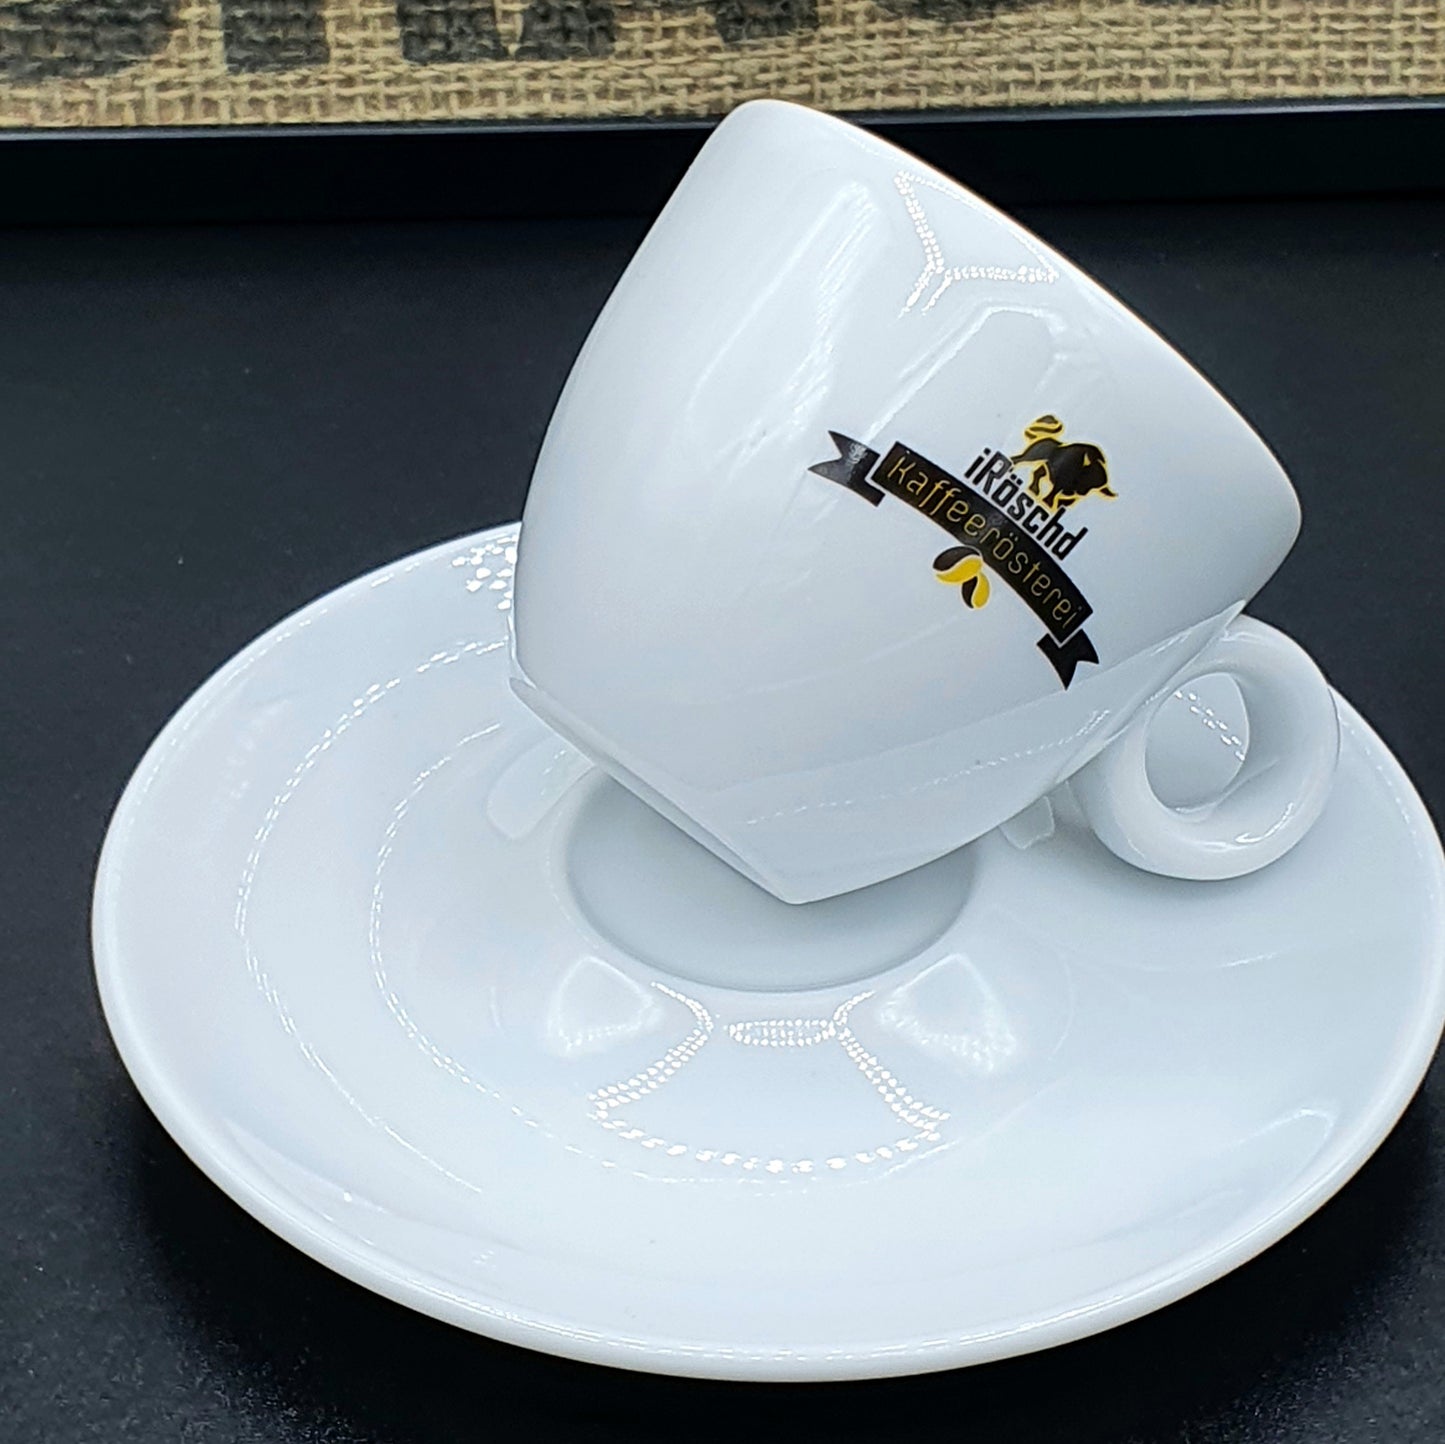 Hochwertige Porzellantasse von iRöschd. Geeignet als Espresso Tasse. Espresso Tasse mit dem Siegel von iRöschd. Die schlichte Untertasse ist enthaltn.